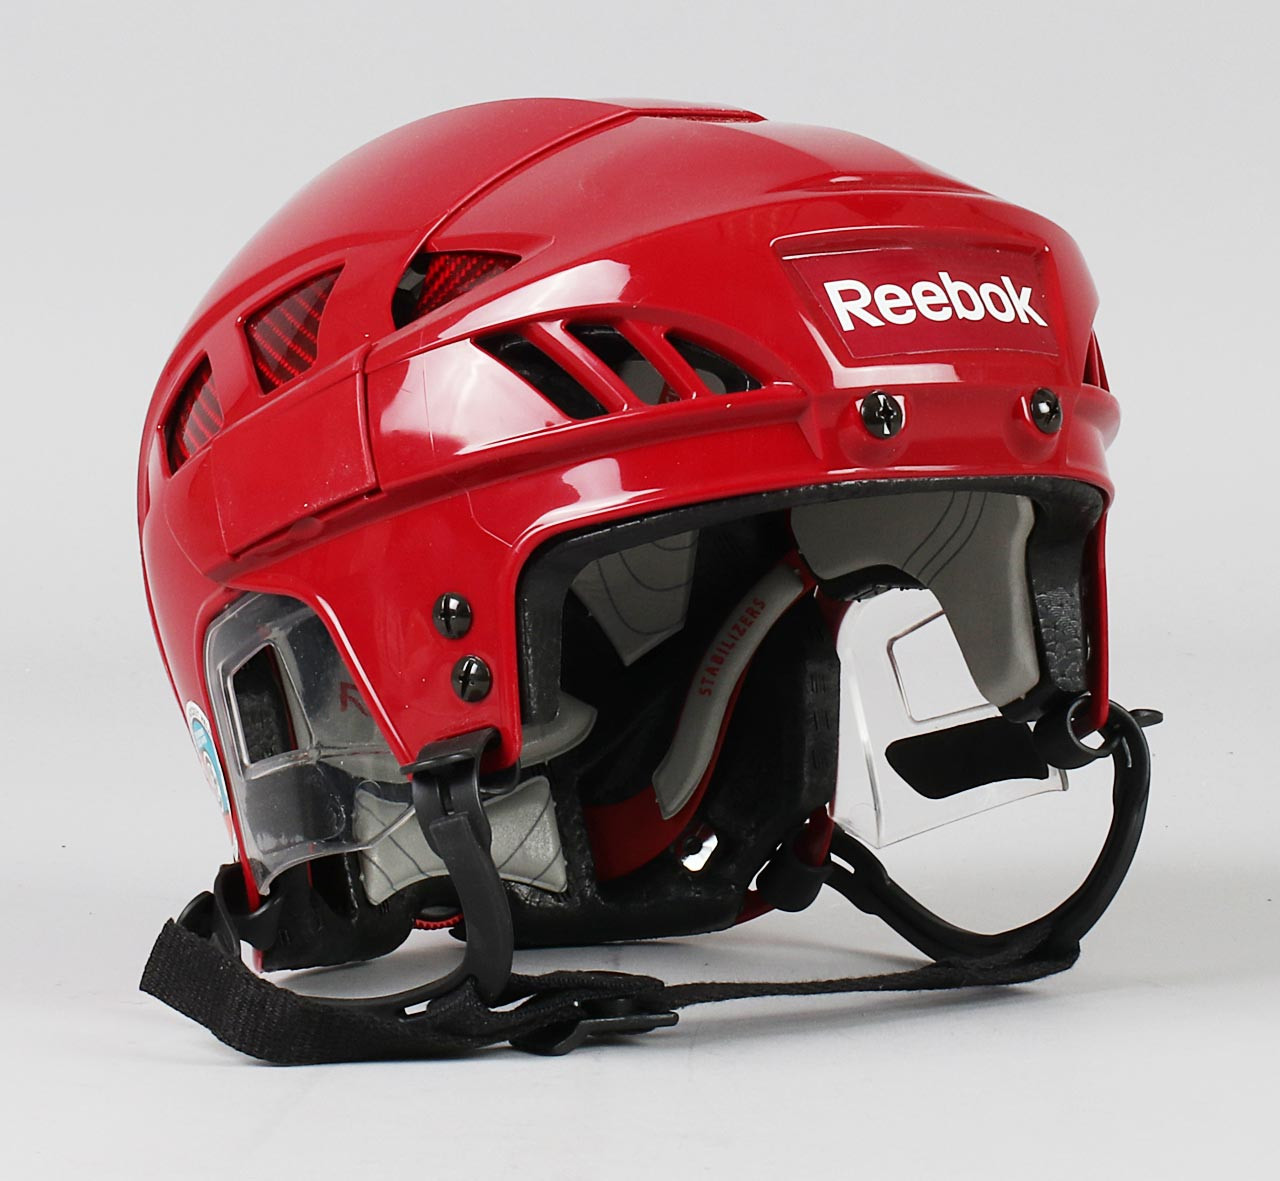 completamente densidad Limpiar el piso Size S - Reebok 8K Maroon Helmet - Arizona Coyotes - Pro Stock Hockey